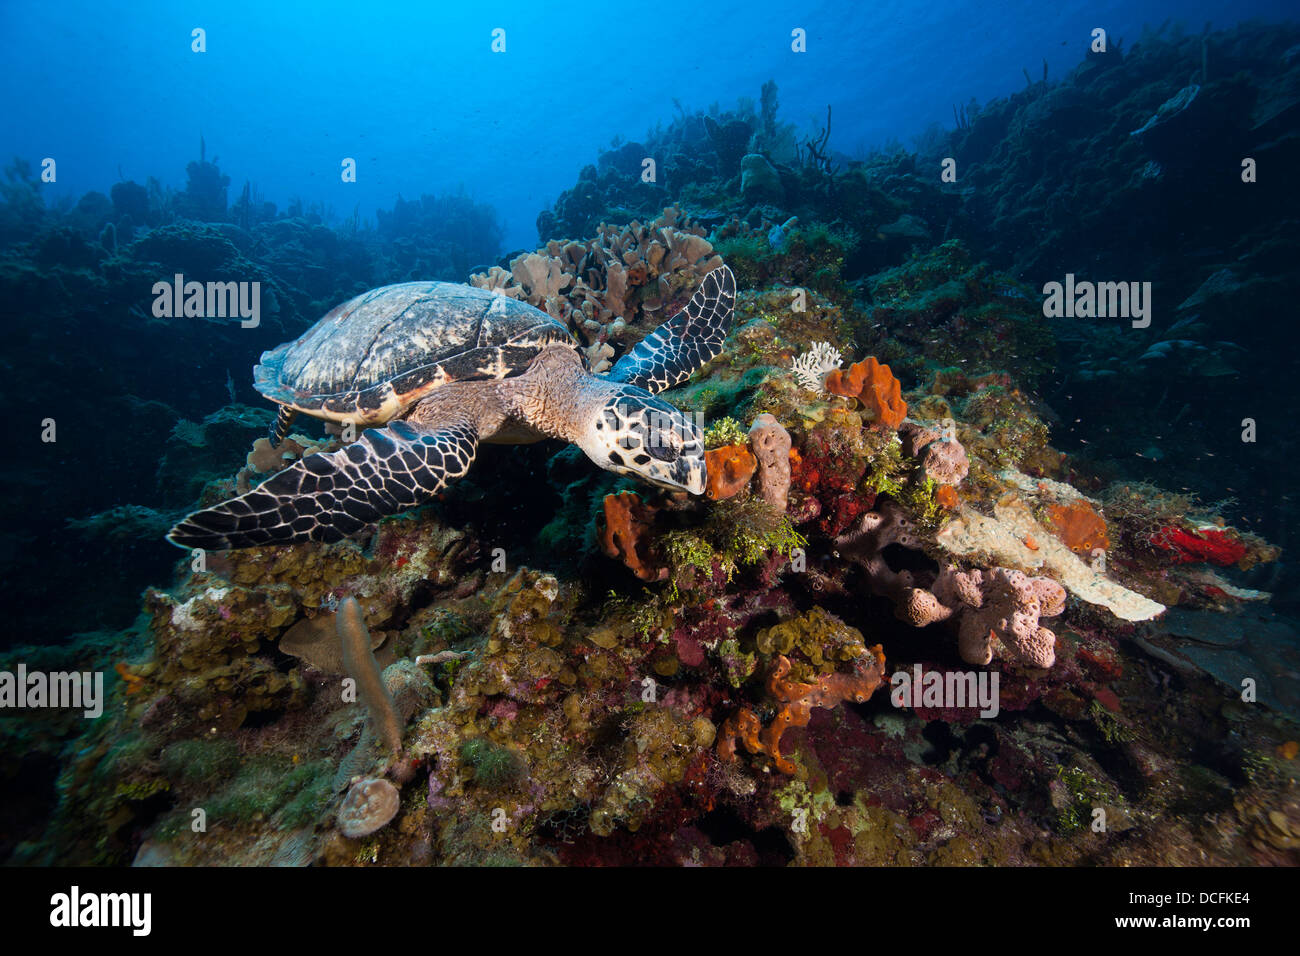 Atlántico de la tortuga carey (Eretmochelys imbricata) forrajeando en un arrecife de coral tropical Foto de stock